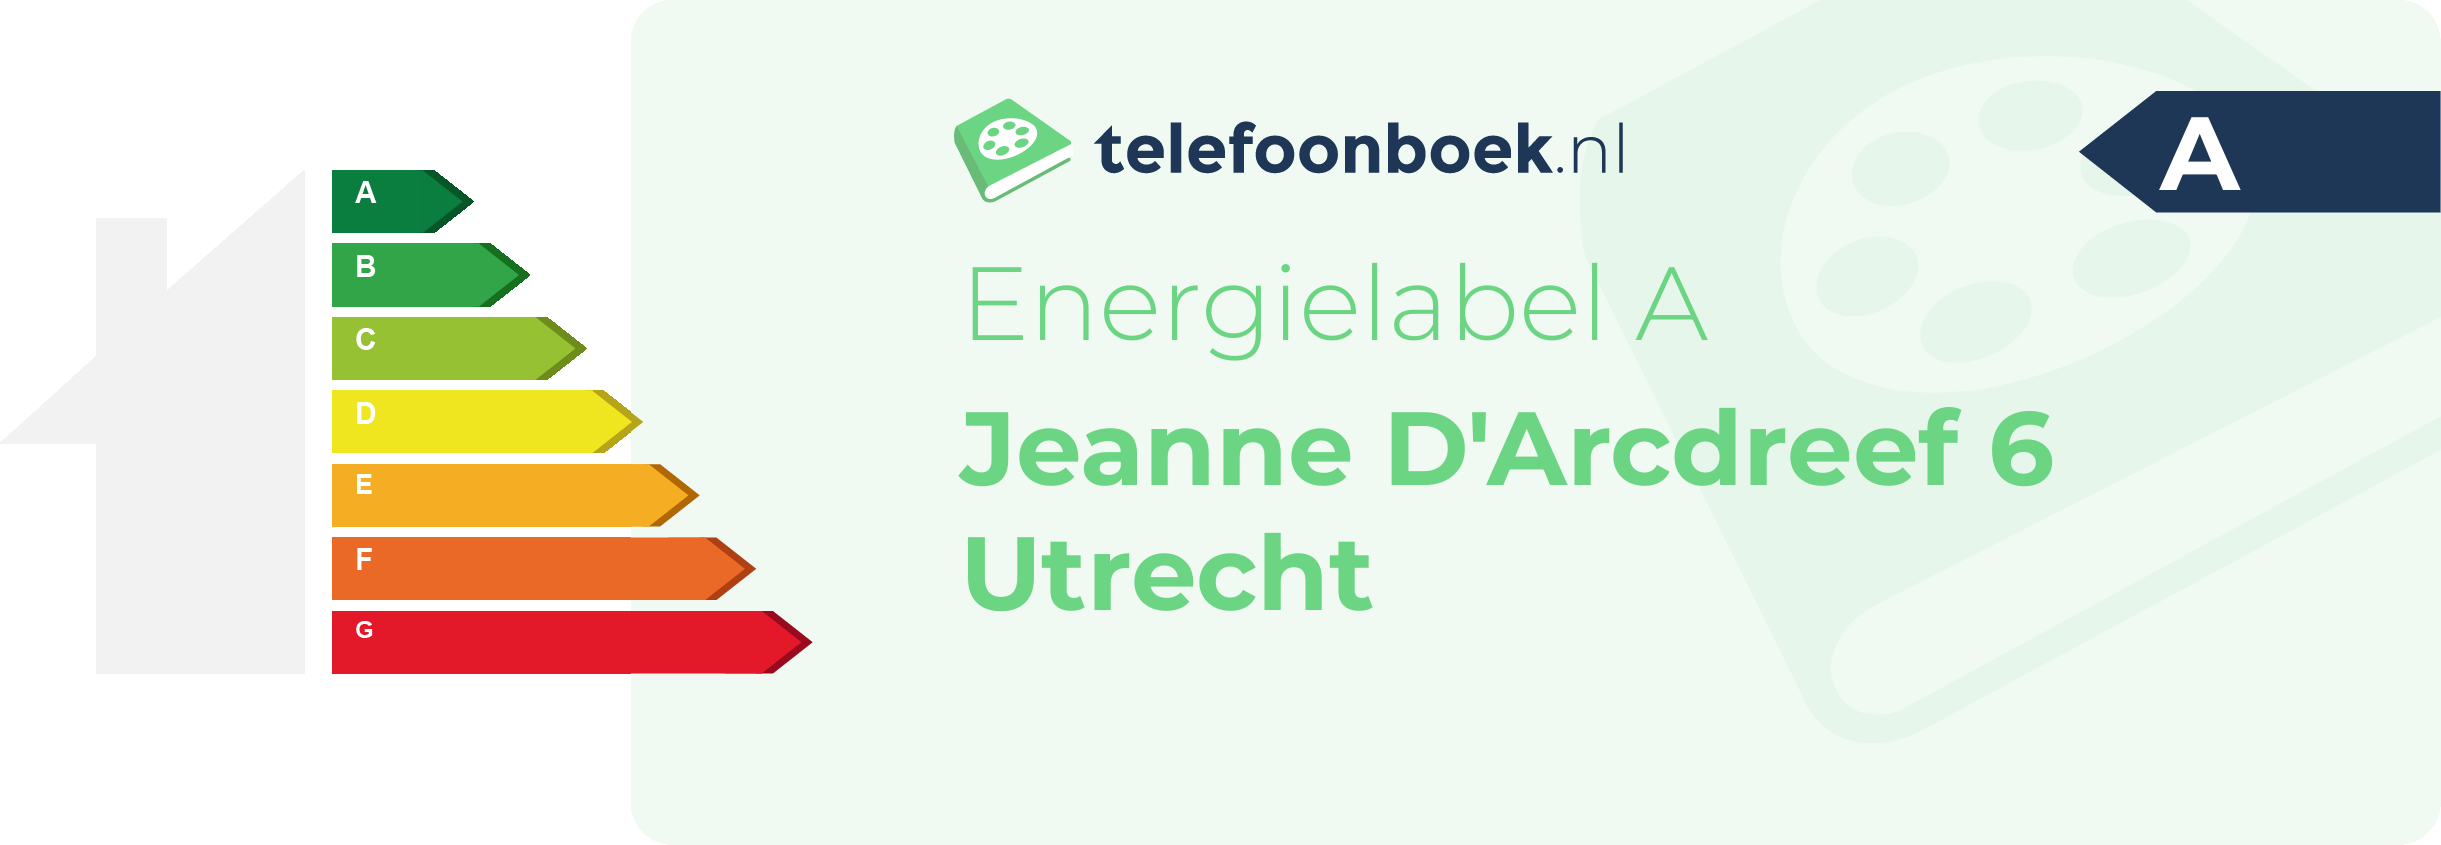 Energielabel Jeanne D'Arcdreef 6 Utrecht